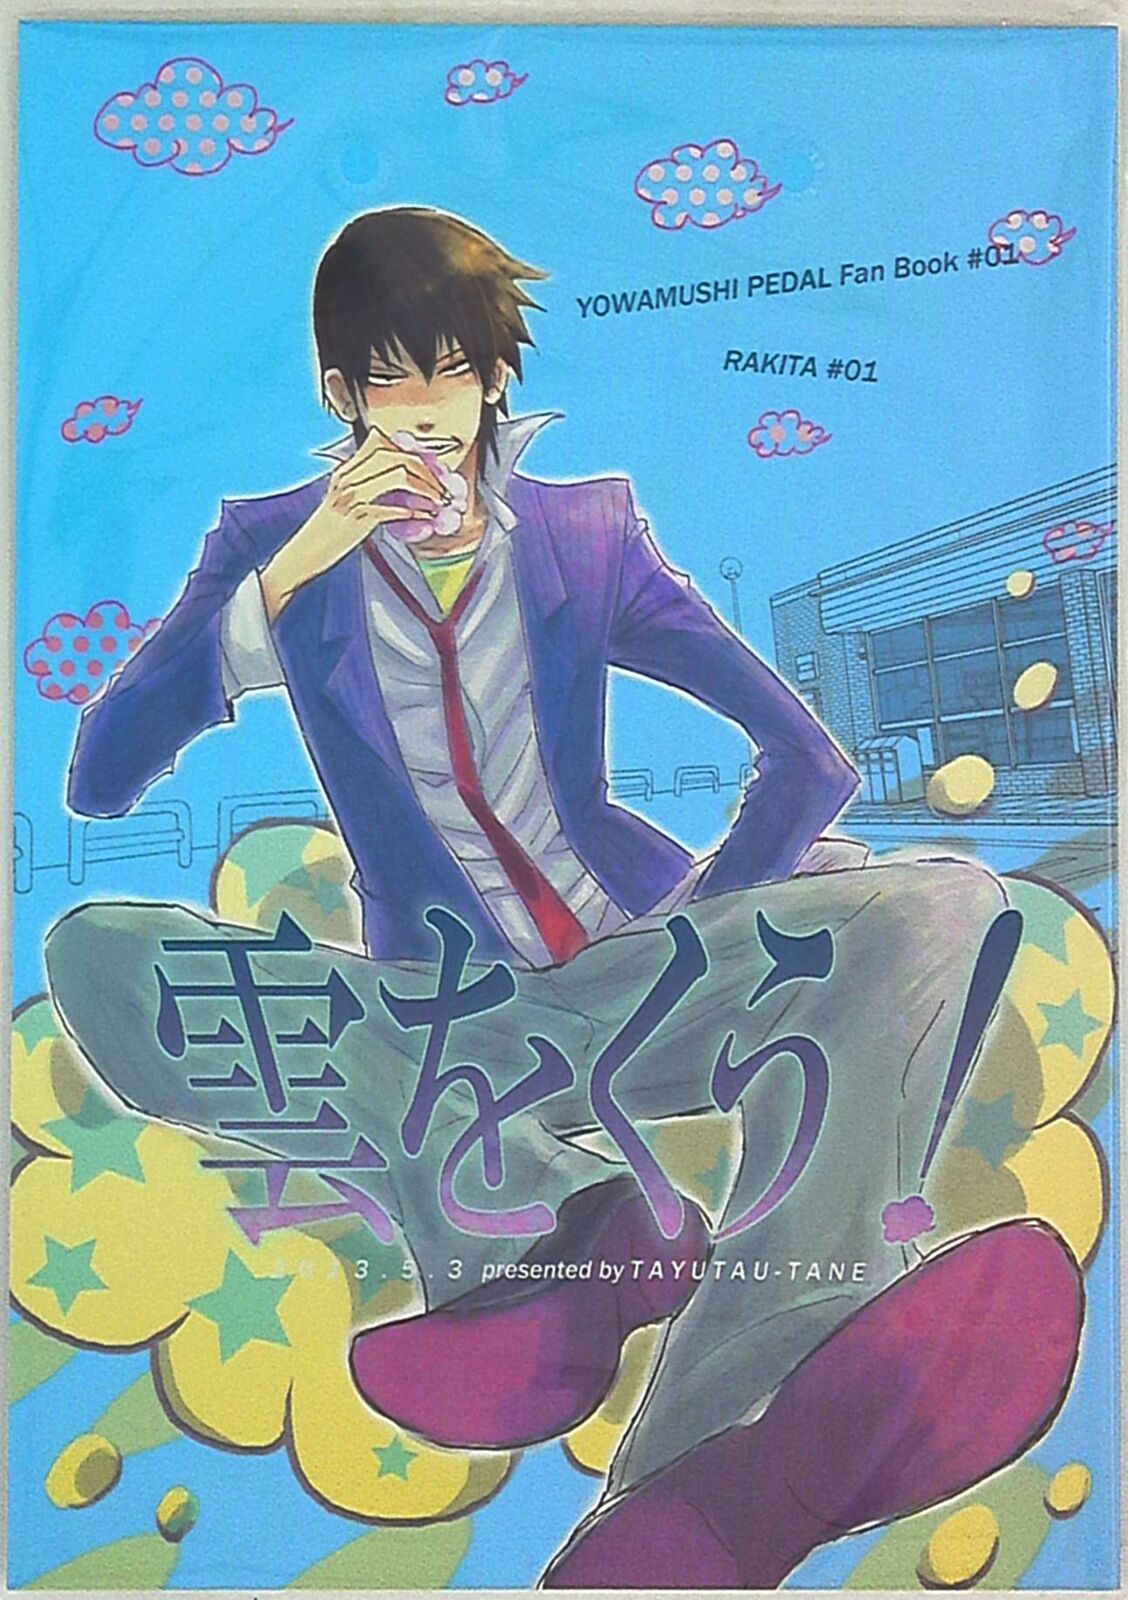 Doujinshi TAYUTAU-TANE (Gotchin) eats the clouds (Yowamushi Pedal Yasutomo ...